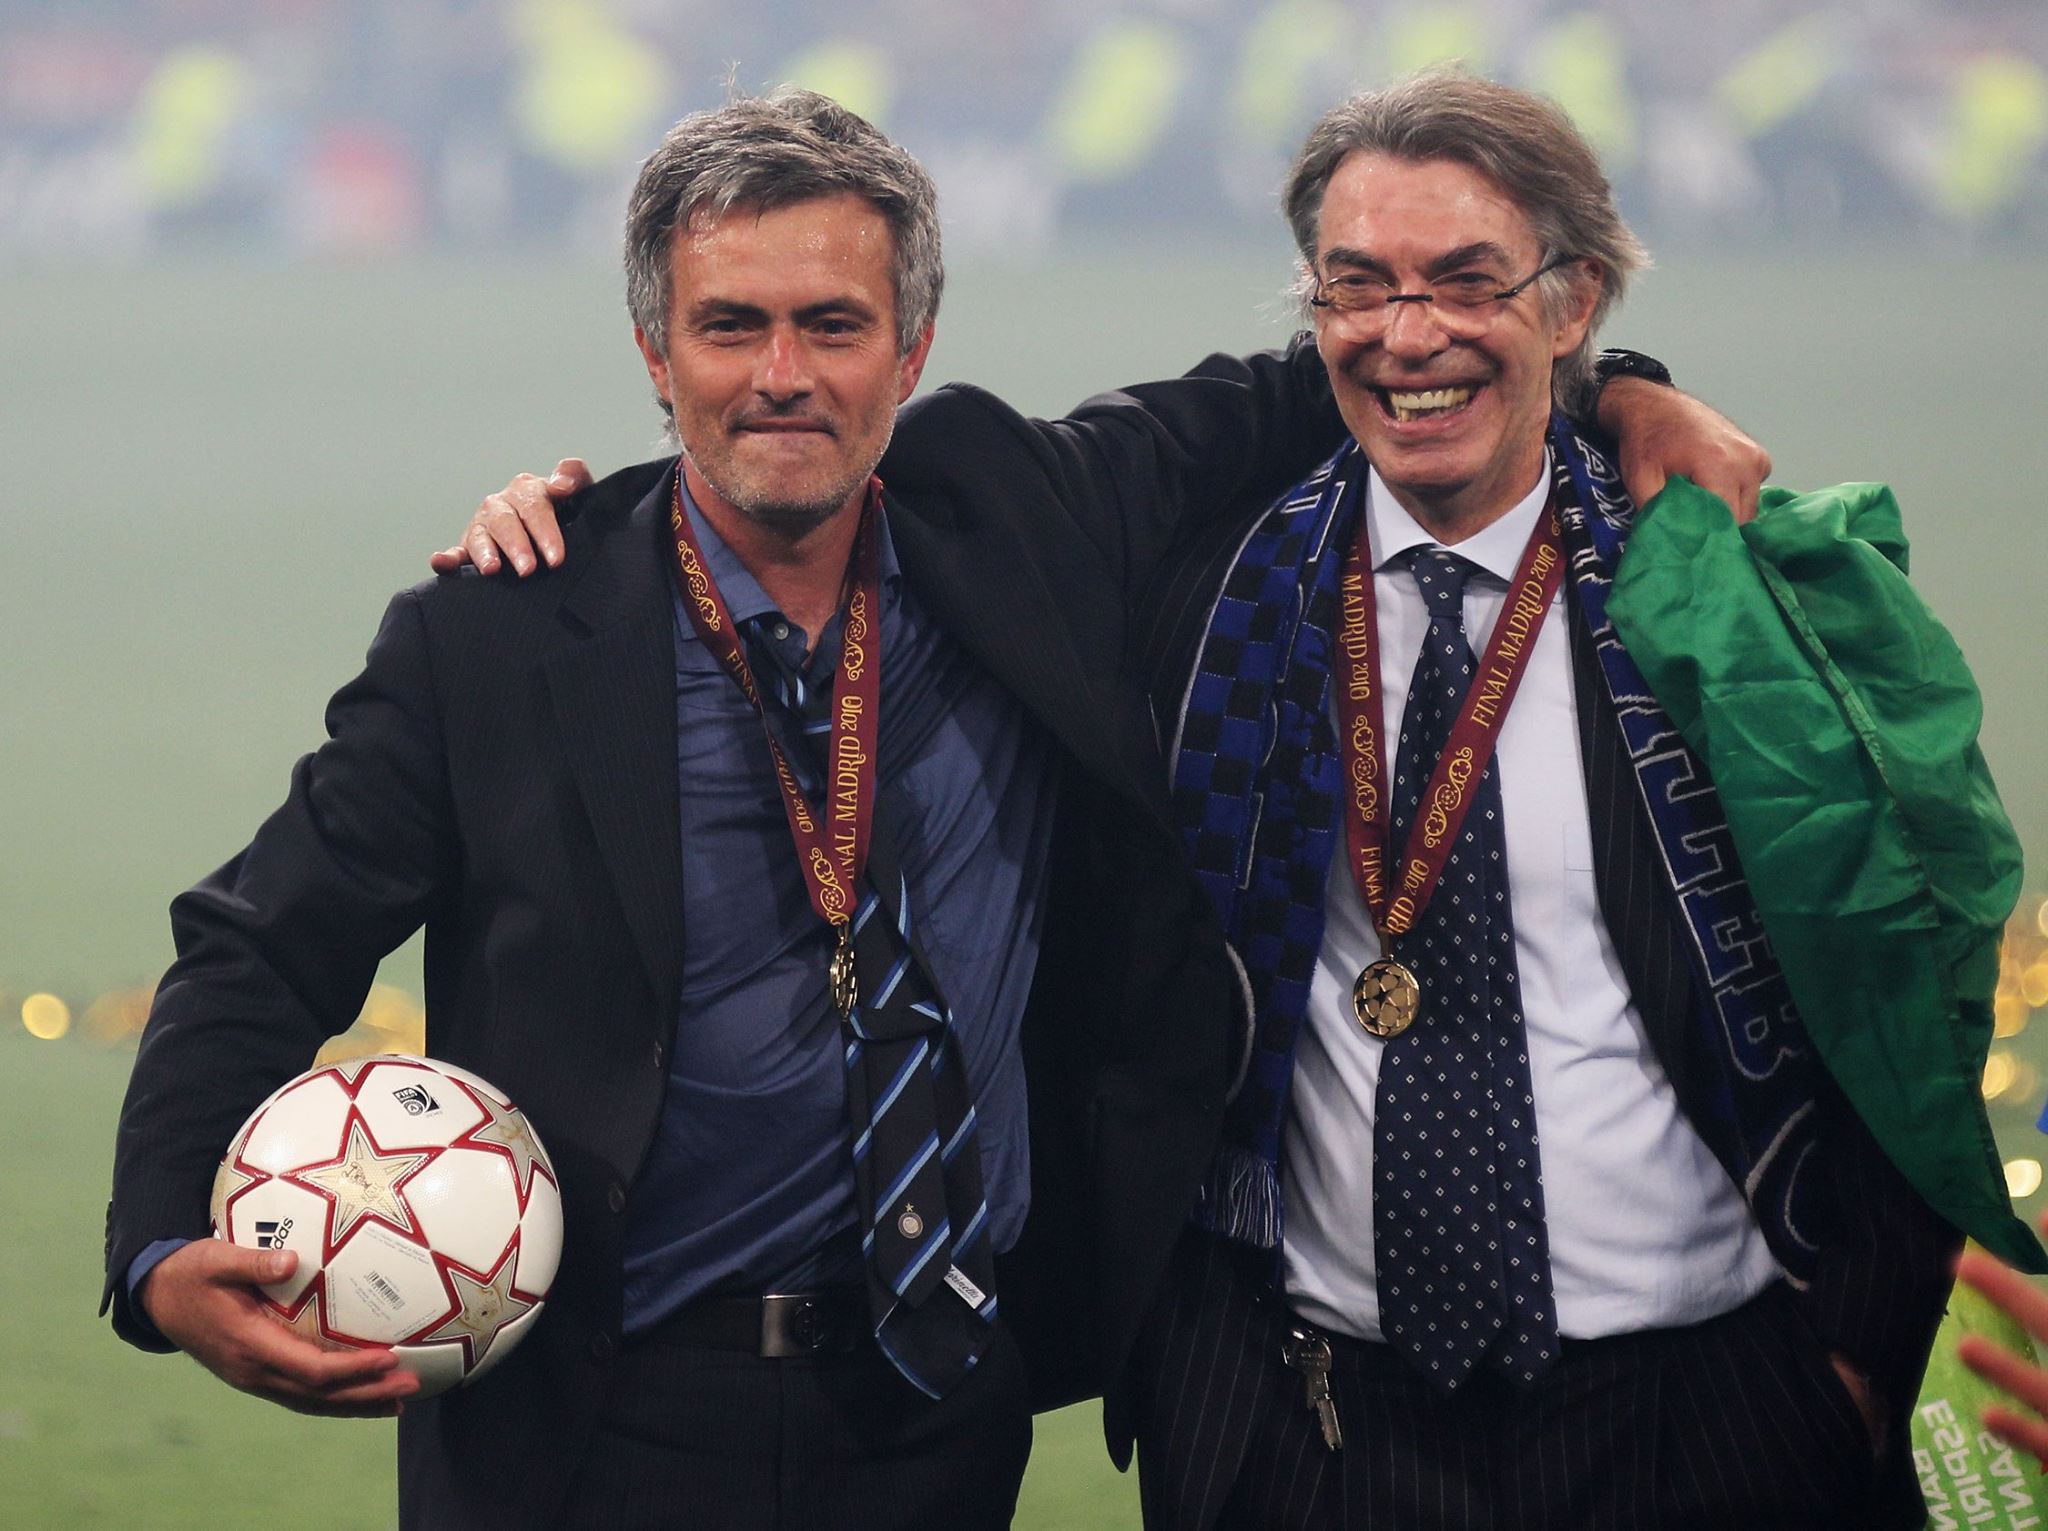 Ngày này 7 năm trước: Mourinho giúp Inter thống trị cả châu Âu - Bóng Đá